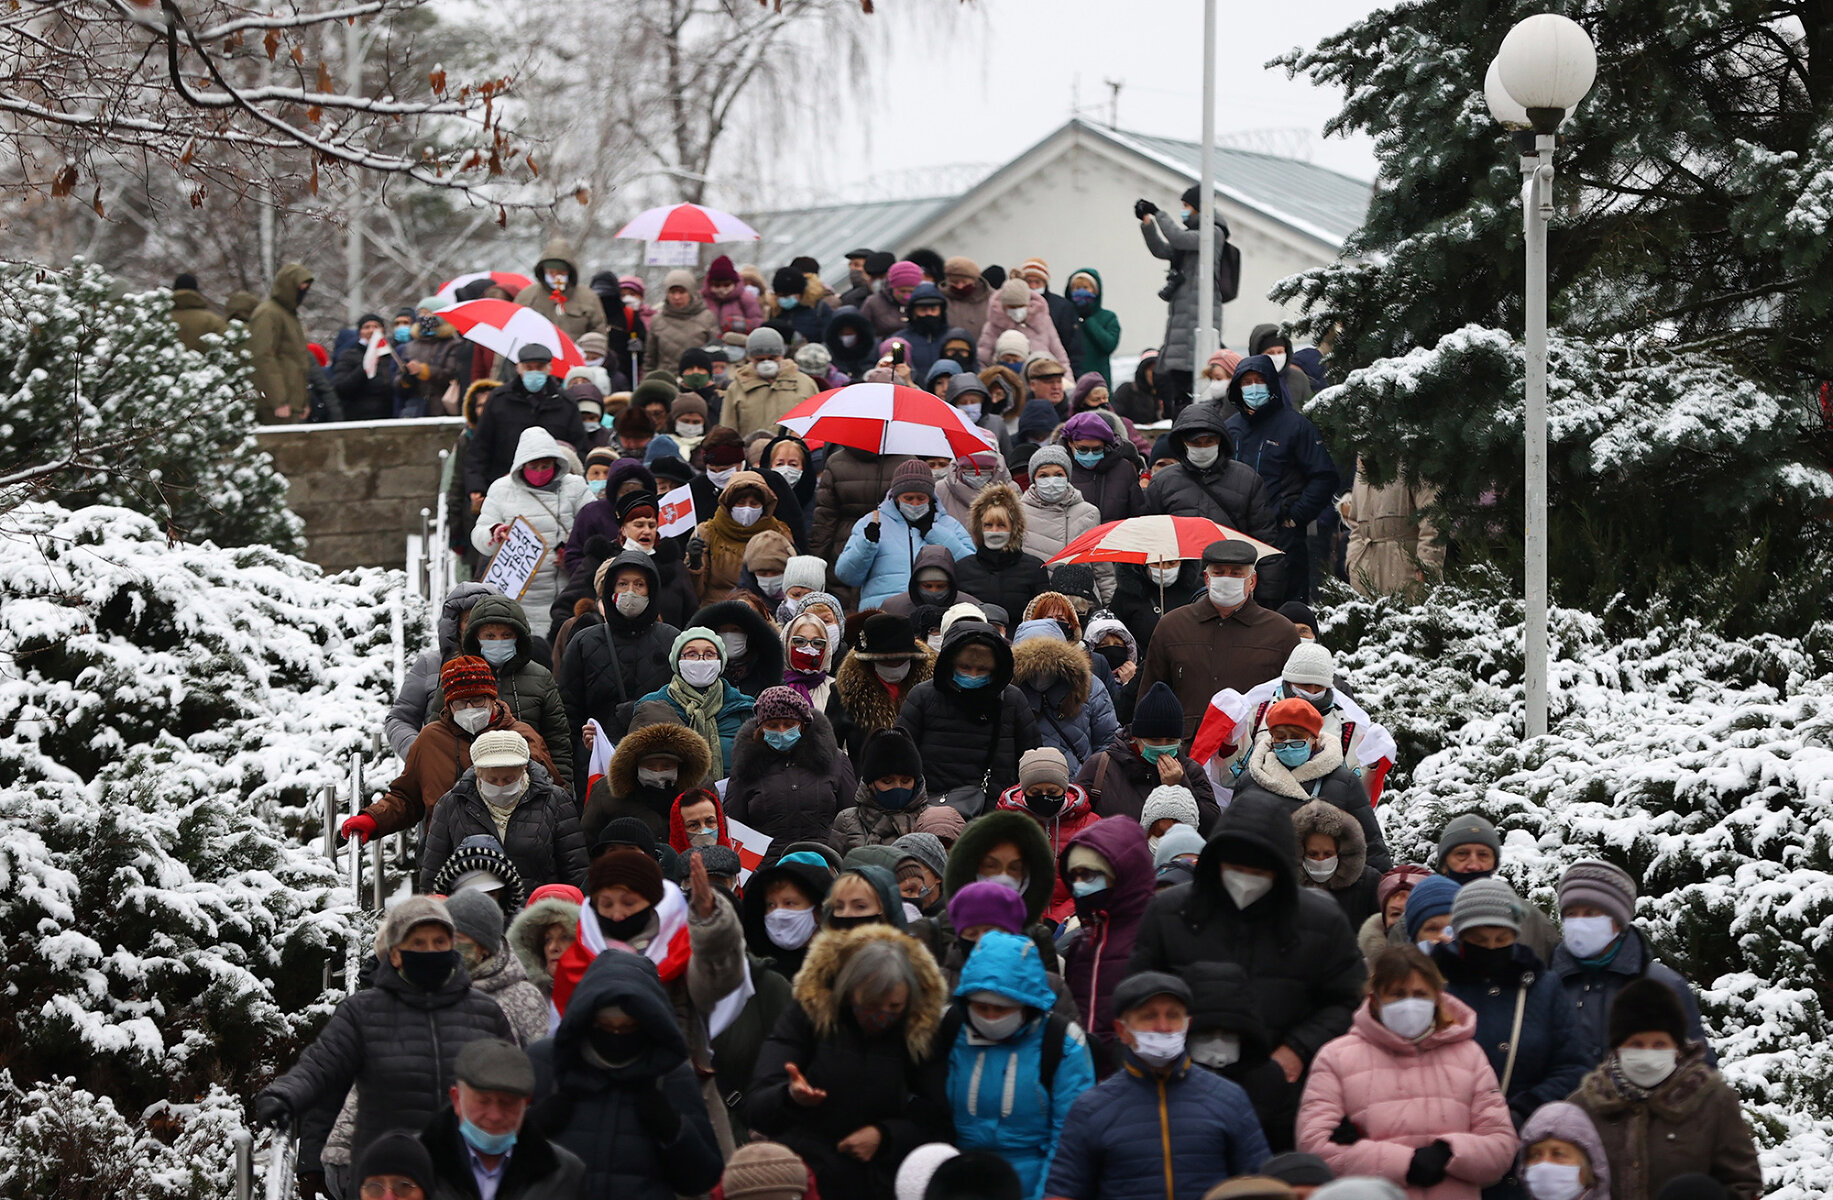 <p>Участники &laquo;Марша пенсионеров&raquo; в Минске, 30 ноября 2020 года.</p>

<p>Ближе к зиме масштабные протесты в Беларуси фактически завершились, однако люди продолжали выходить на улицы. Они собирались маленькими колоннами, проводили шествия во дворах, заранее никак не анонсируя свои акции.&nbsp;&nbsp;</p>